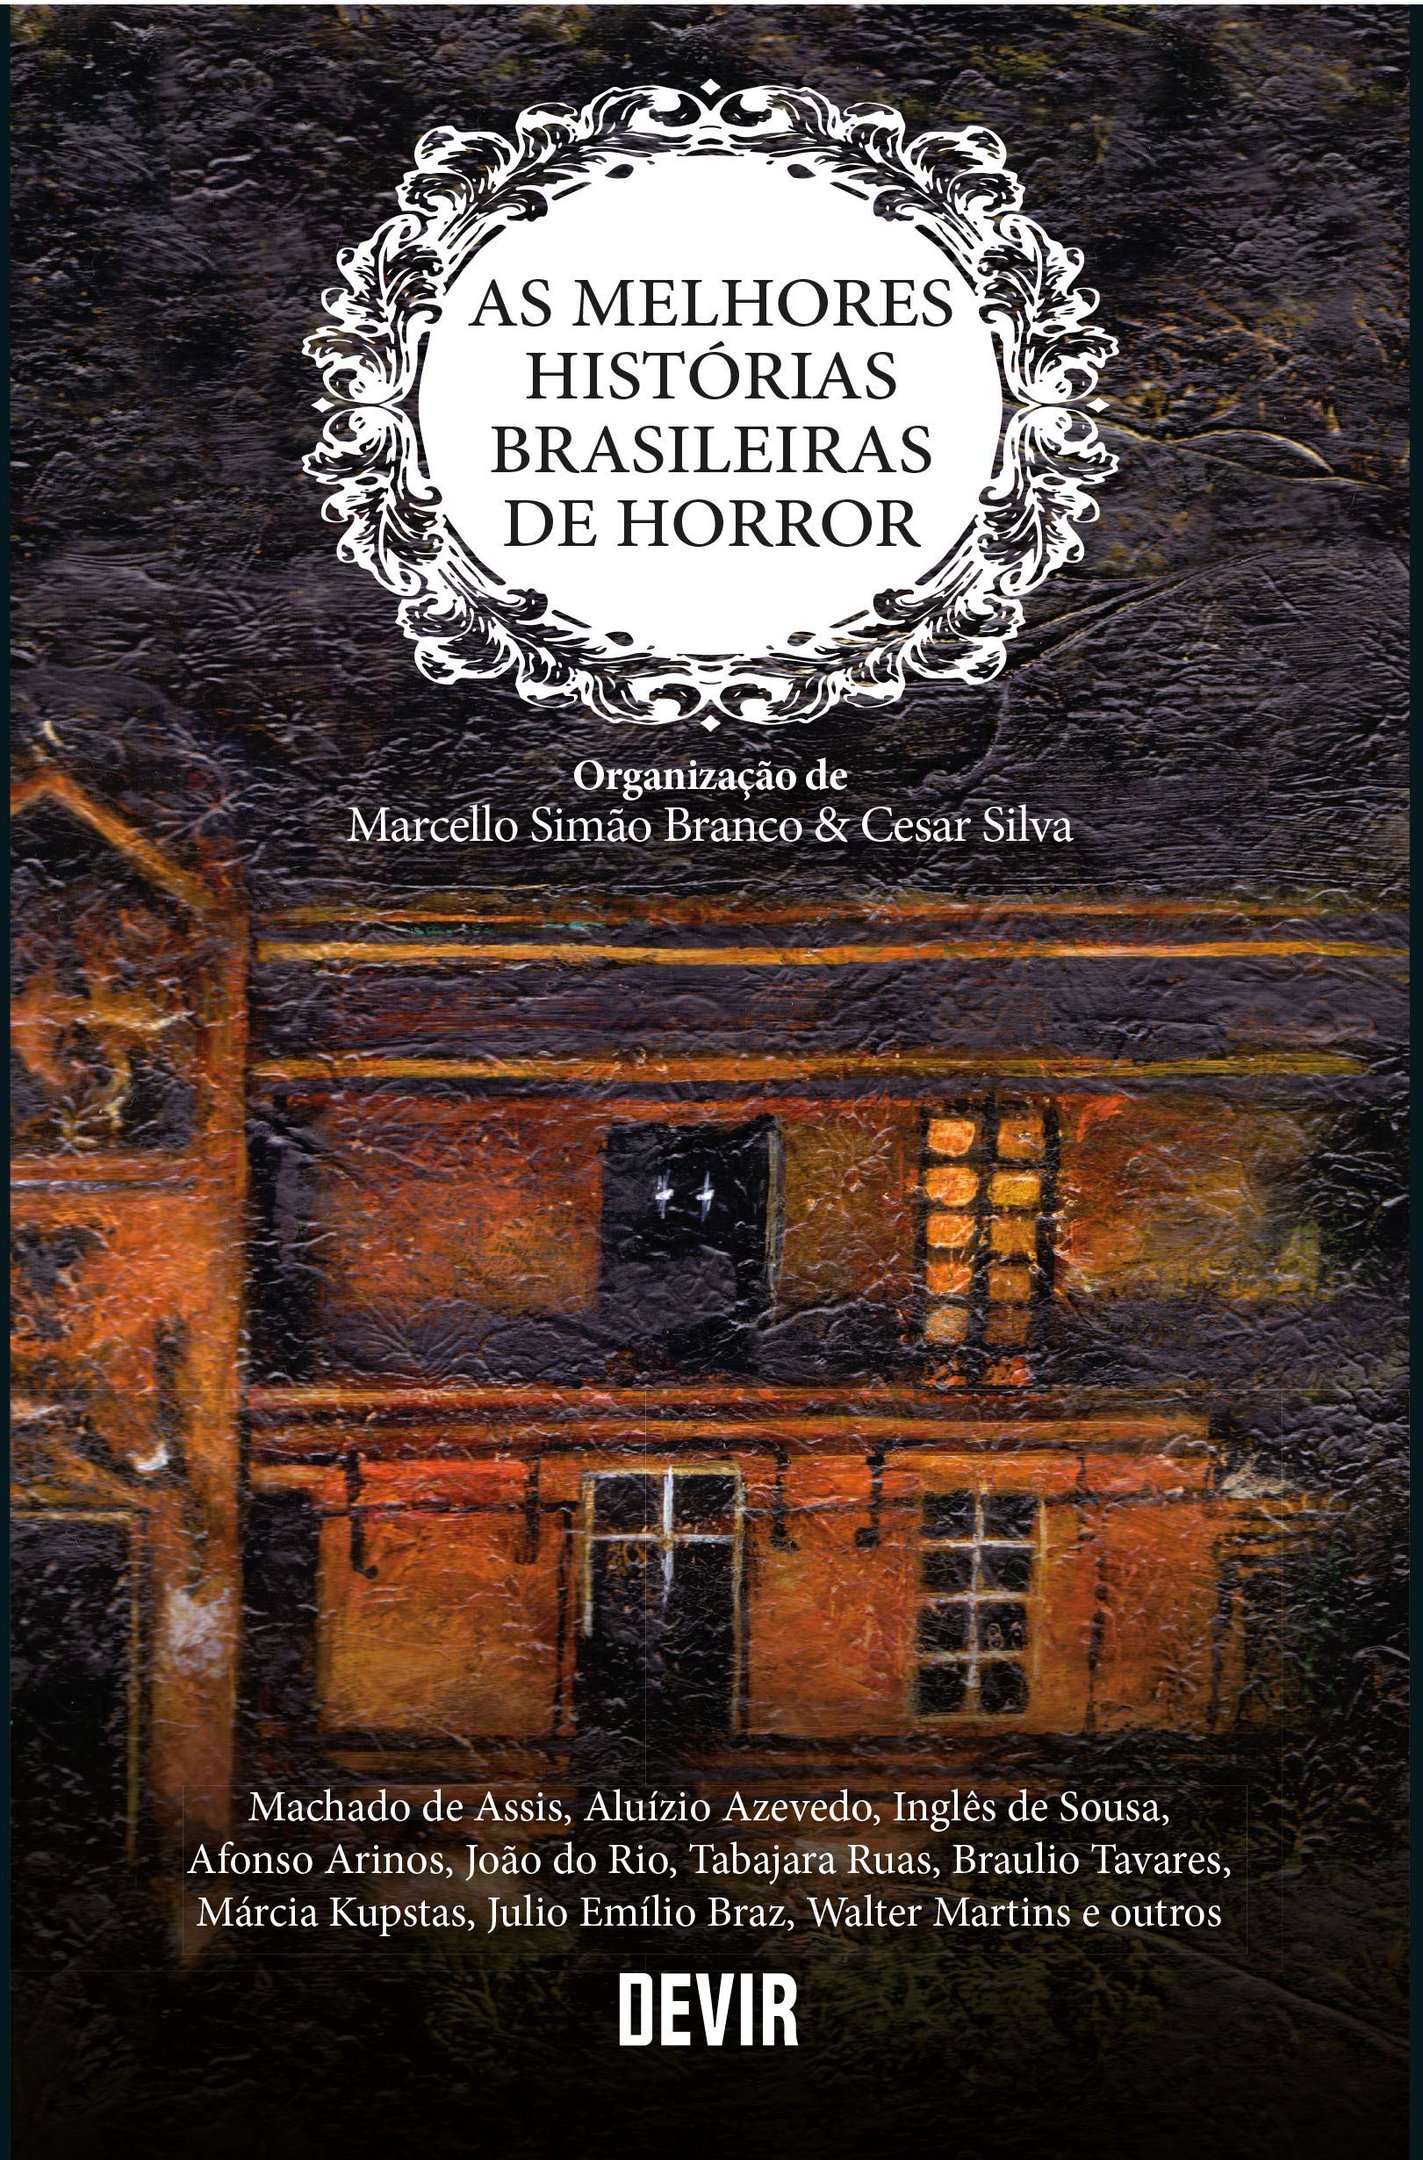 capa do livro terror brasileiro